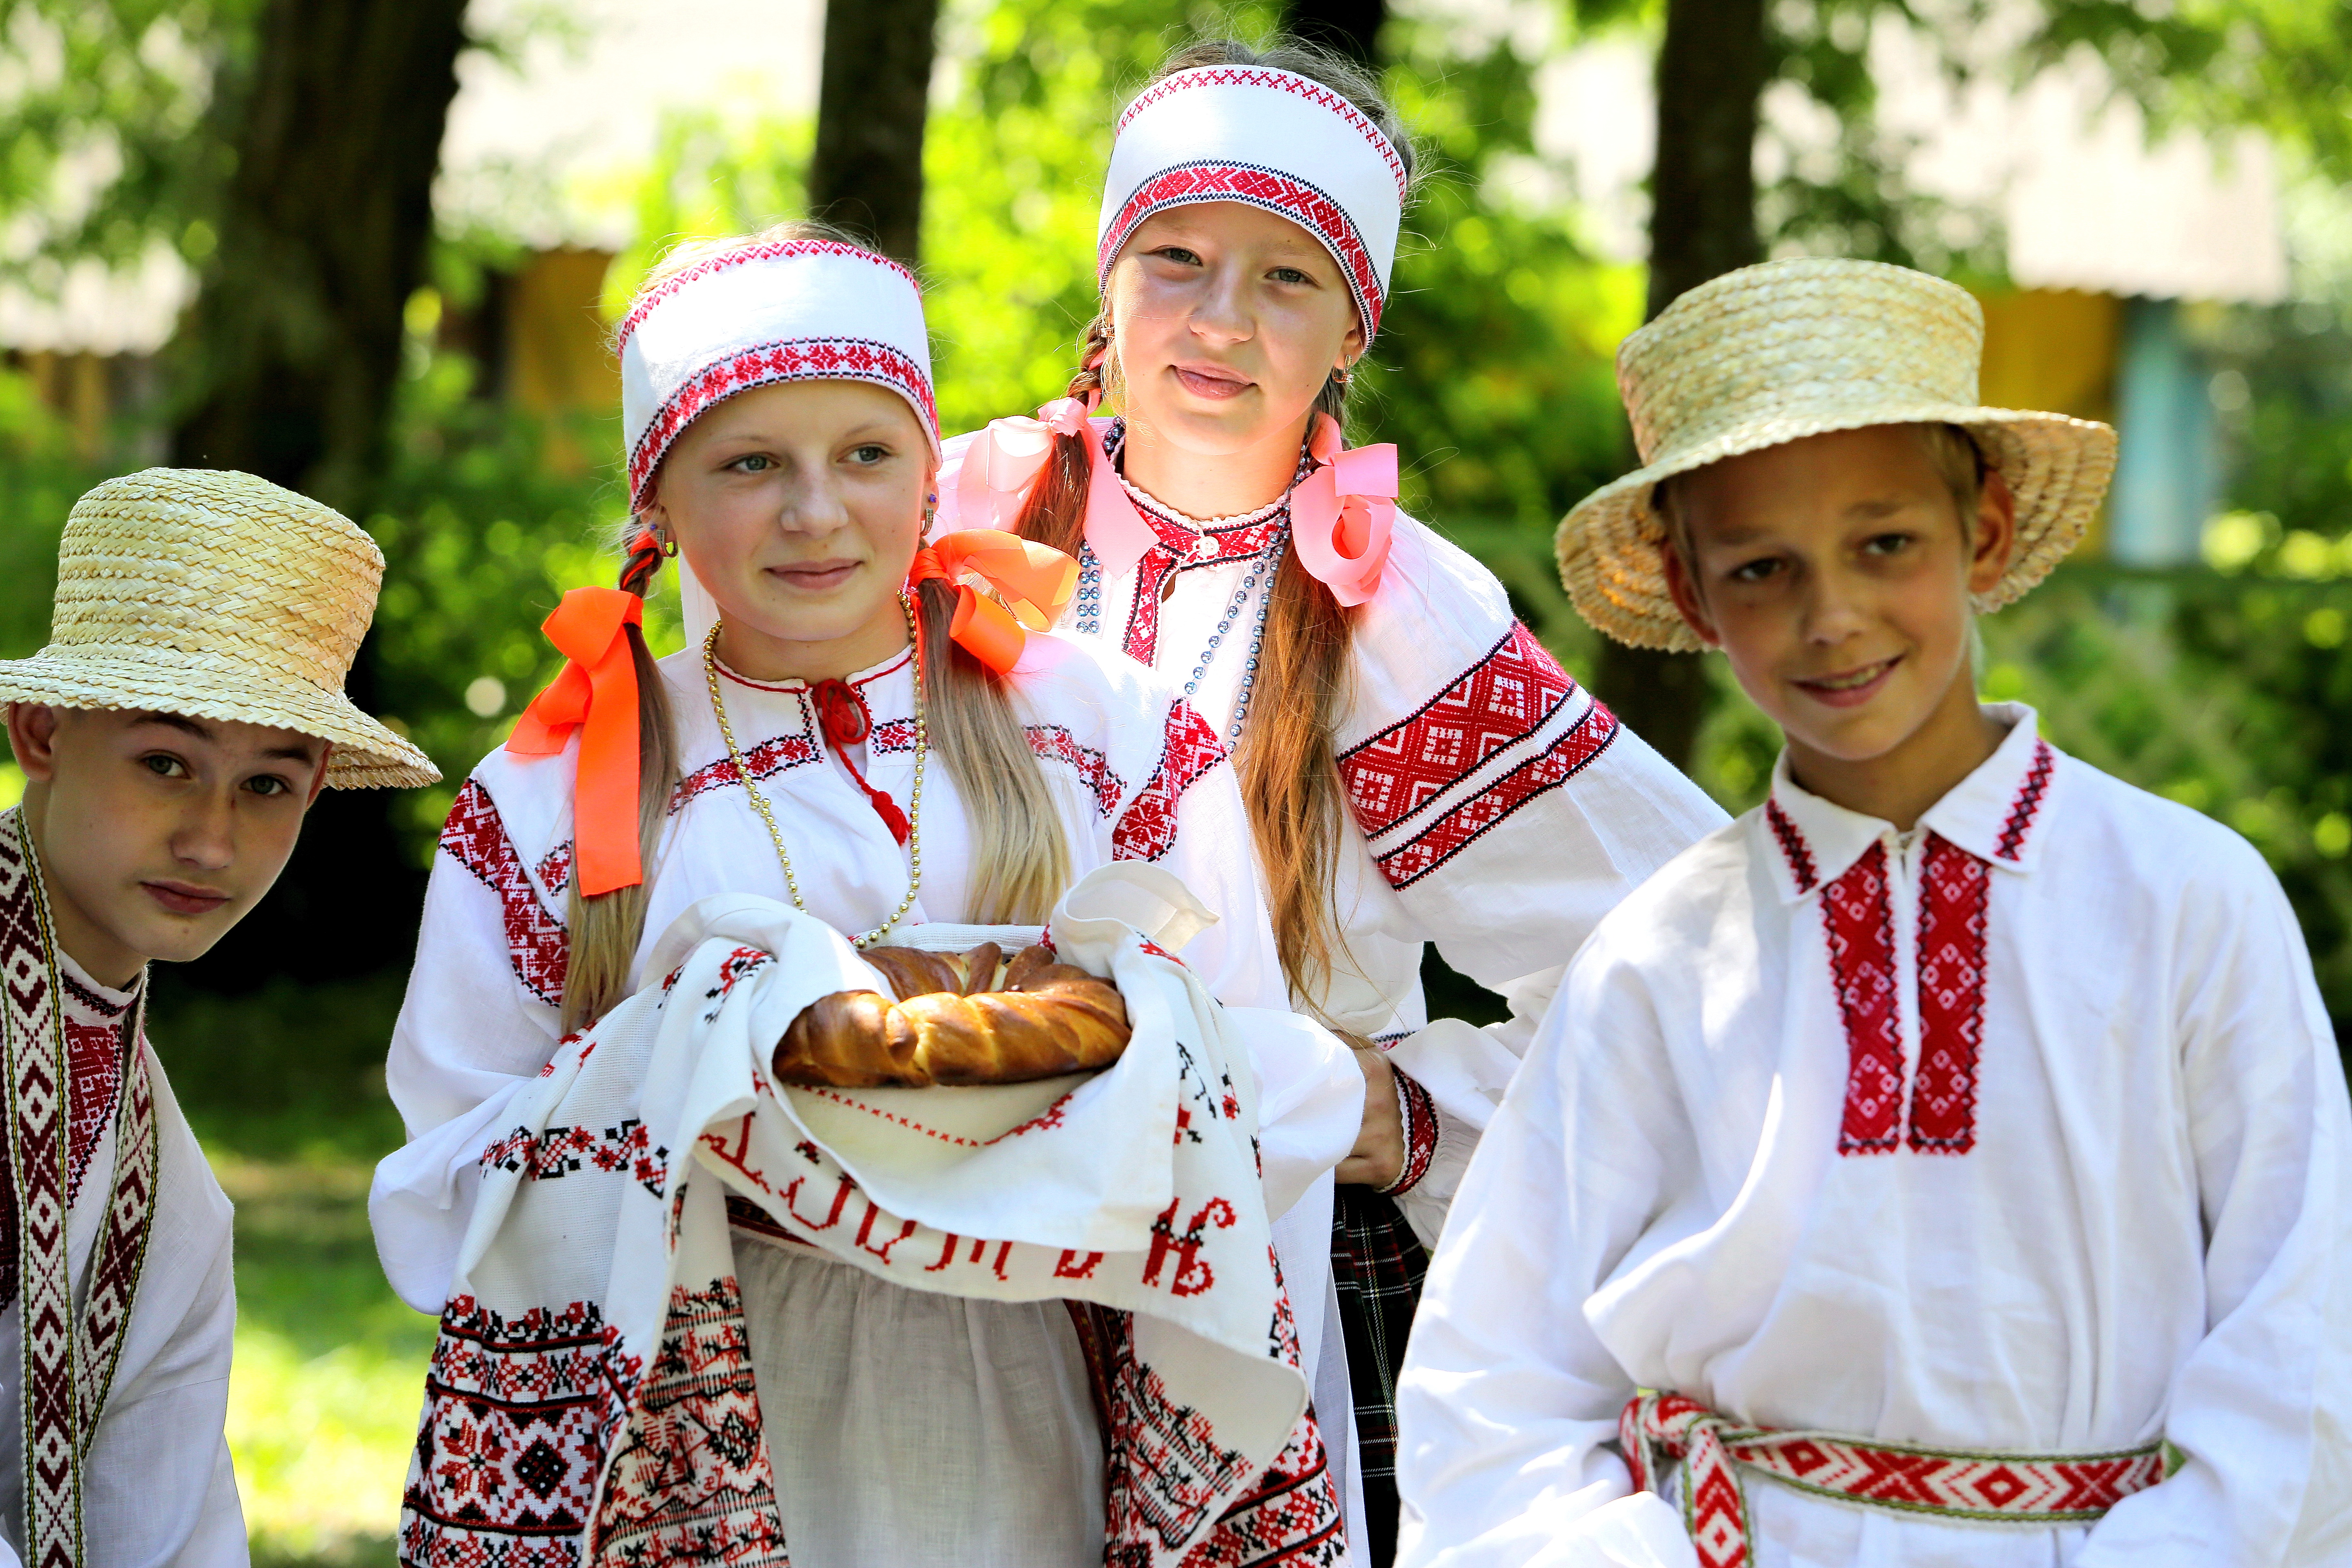 Фестиваль "Берегиня" пройдет в Октябрьском районе 20-24 июня